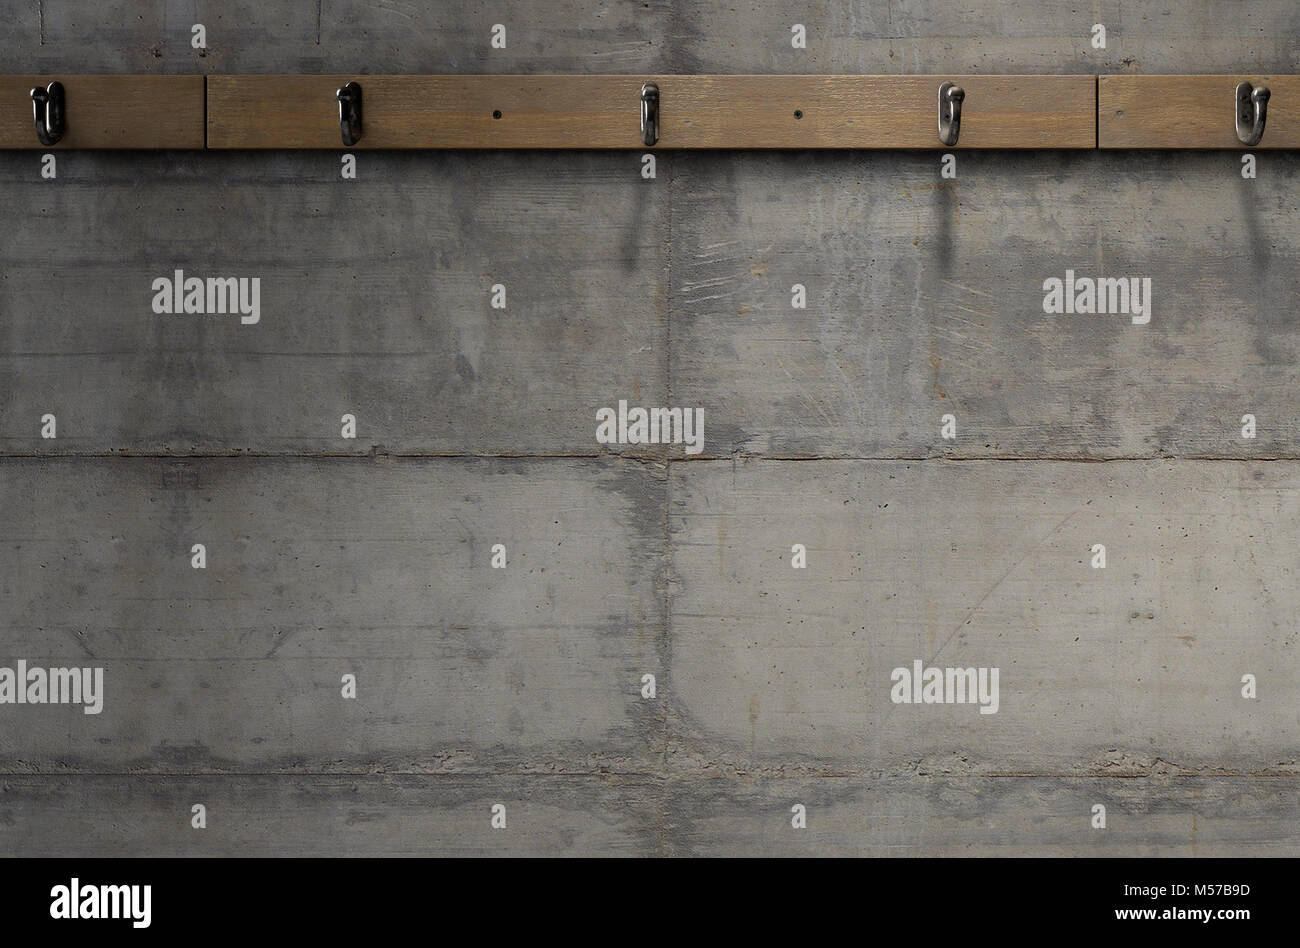 Eine leere Kleidung aufhängen Rack über eine leere Holzbank gegen eine  Betonwand in ein heruntergekommenes Schließfach ändern - 3D-Rendering  Stockfotografie - Alamy